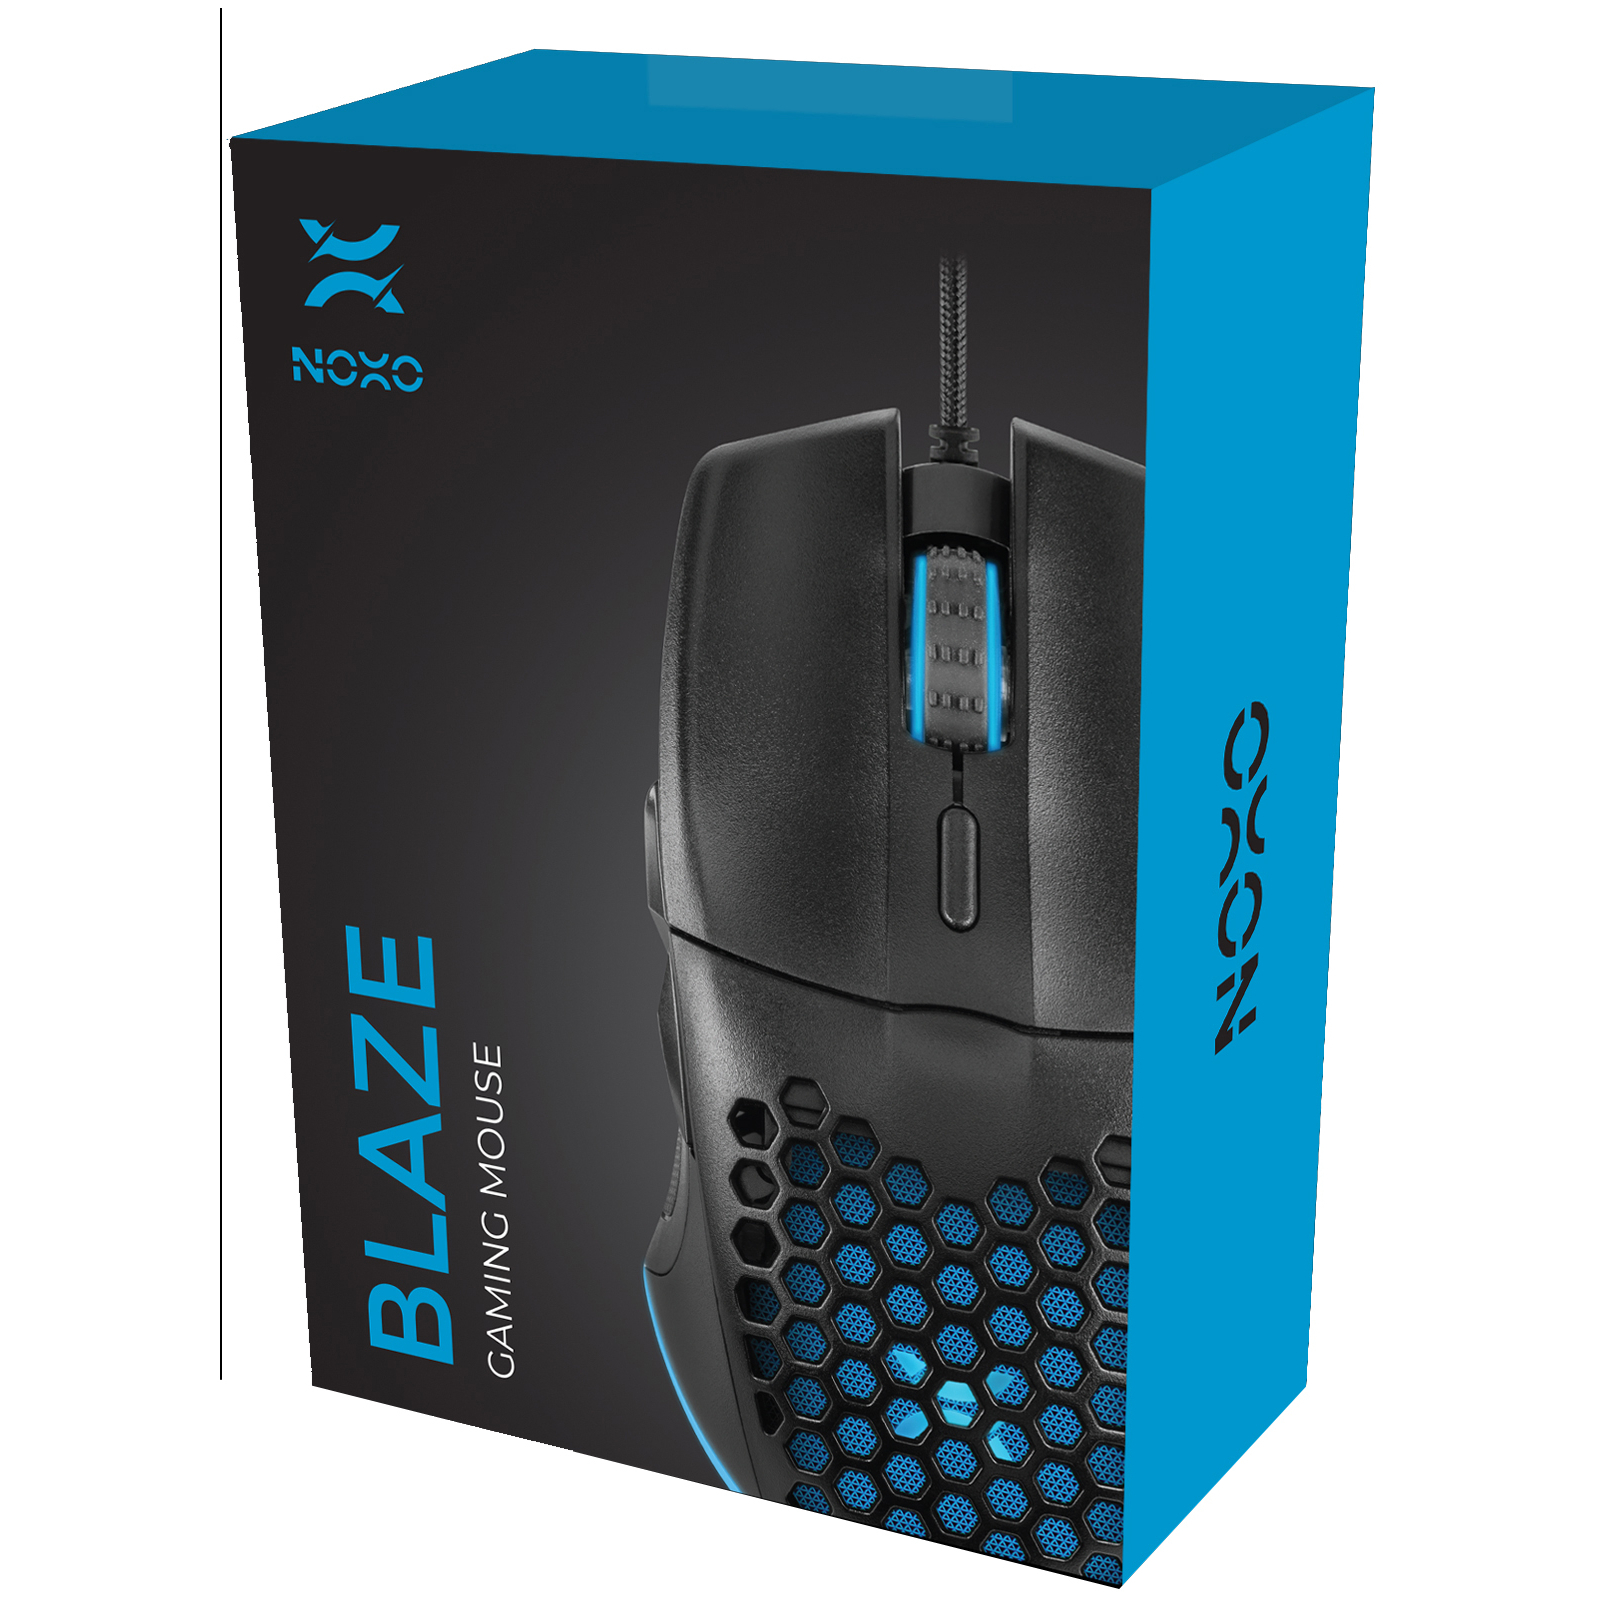 Мышка Noxo Blaze Gaming mouse USB Black (4770070881903) изображение 6